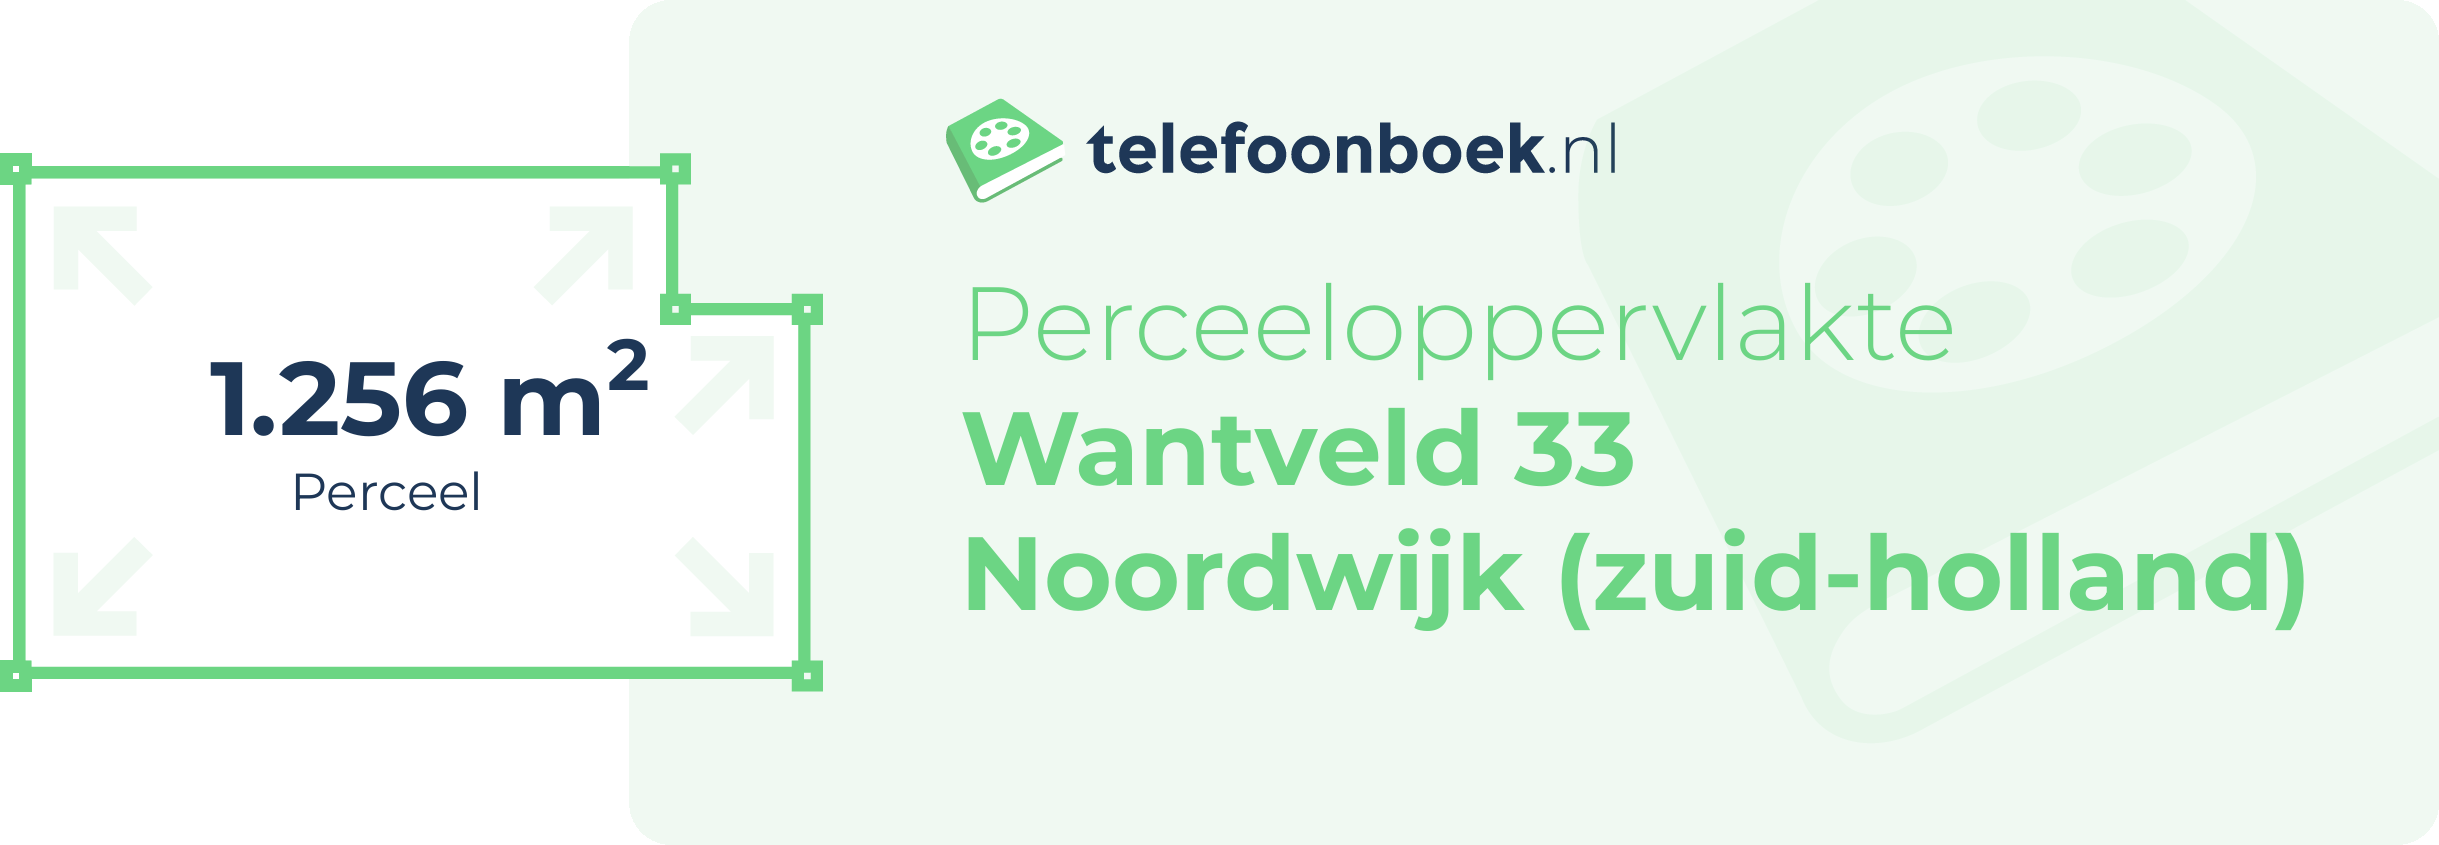 Perceeloppervlakte Wantveld 33 Noordwijk (Zuid-Holland)